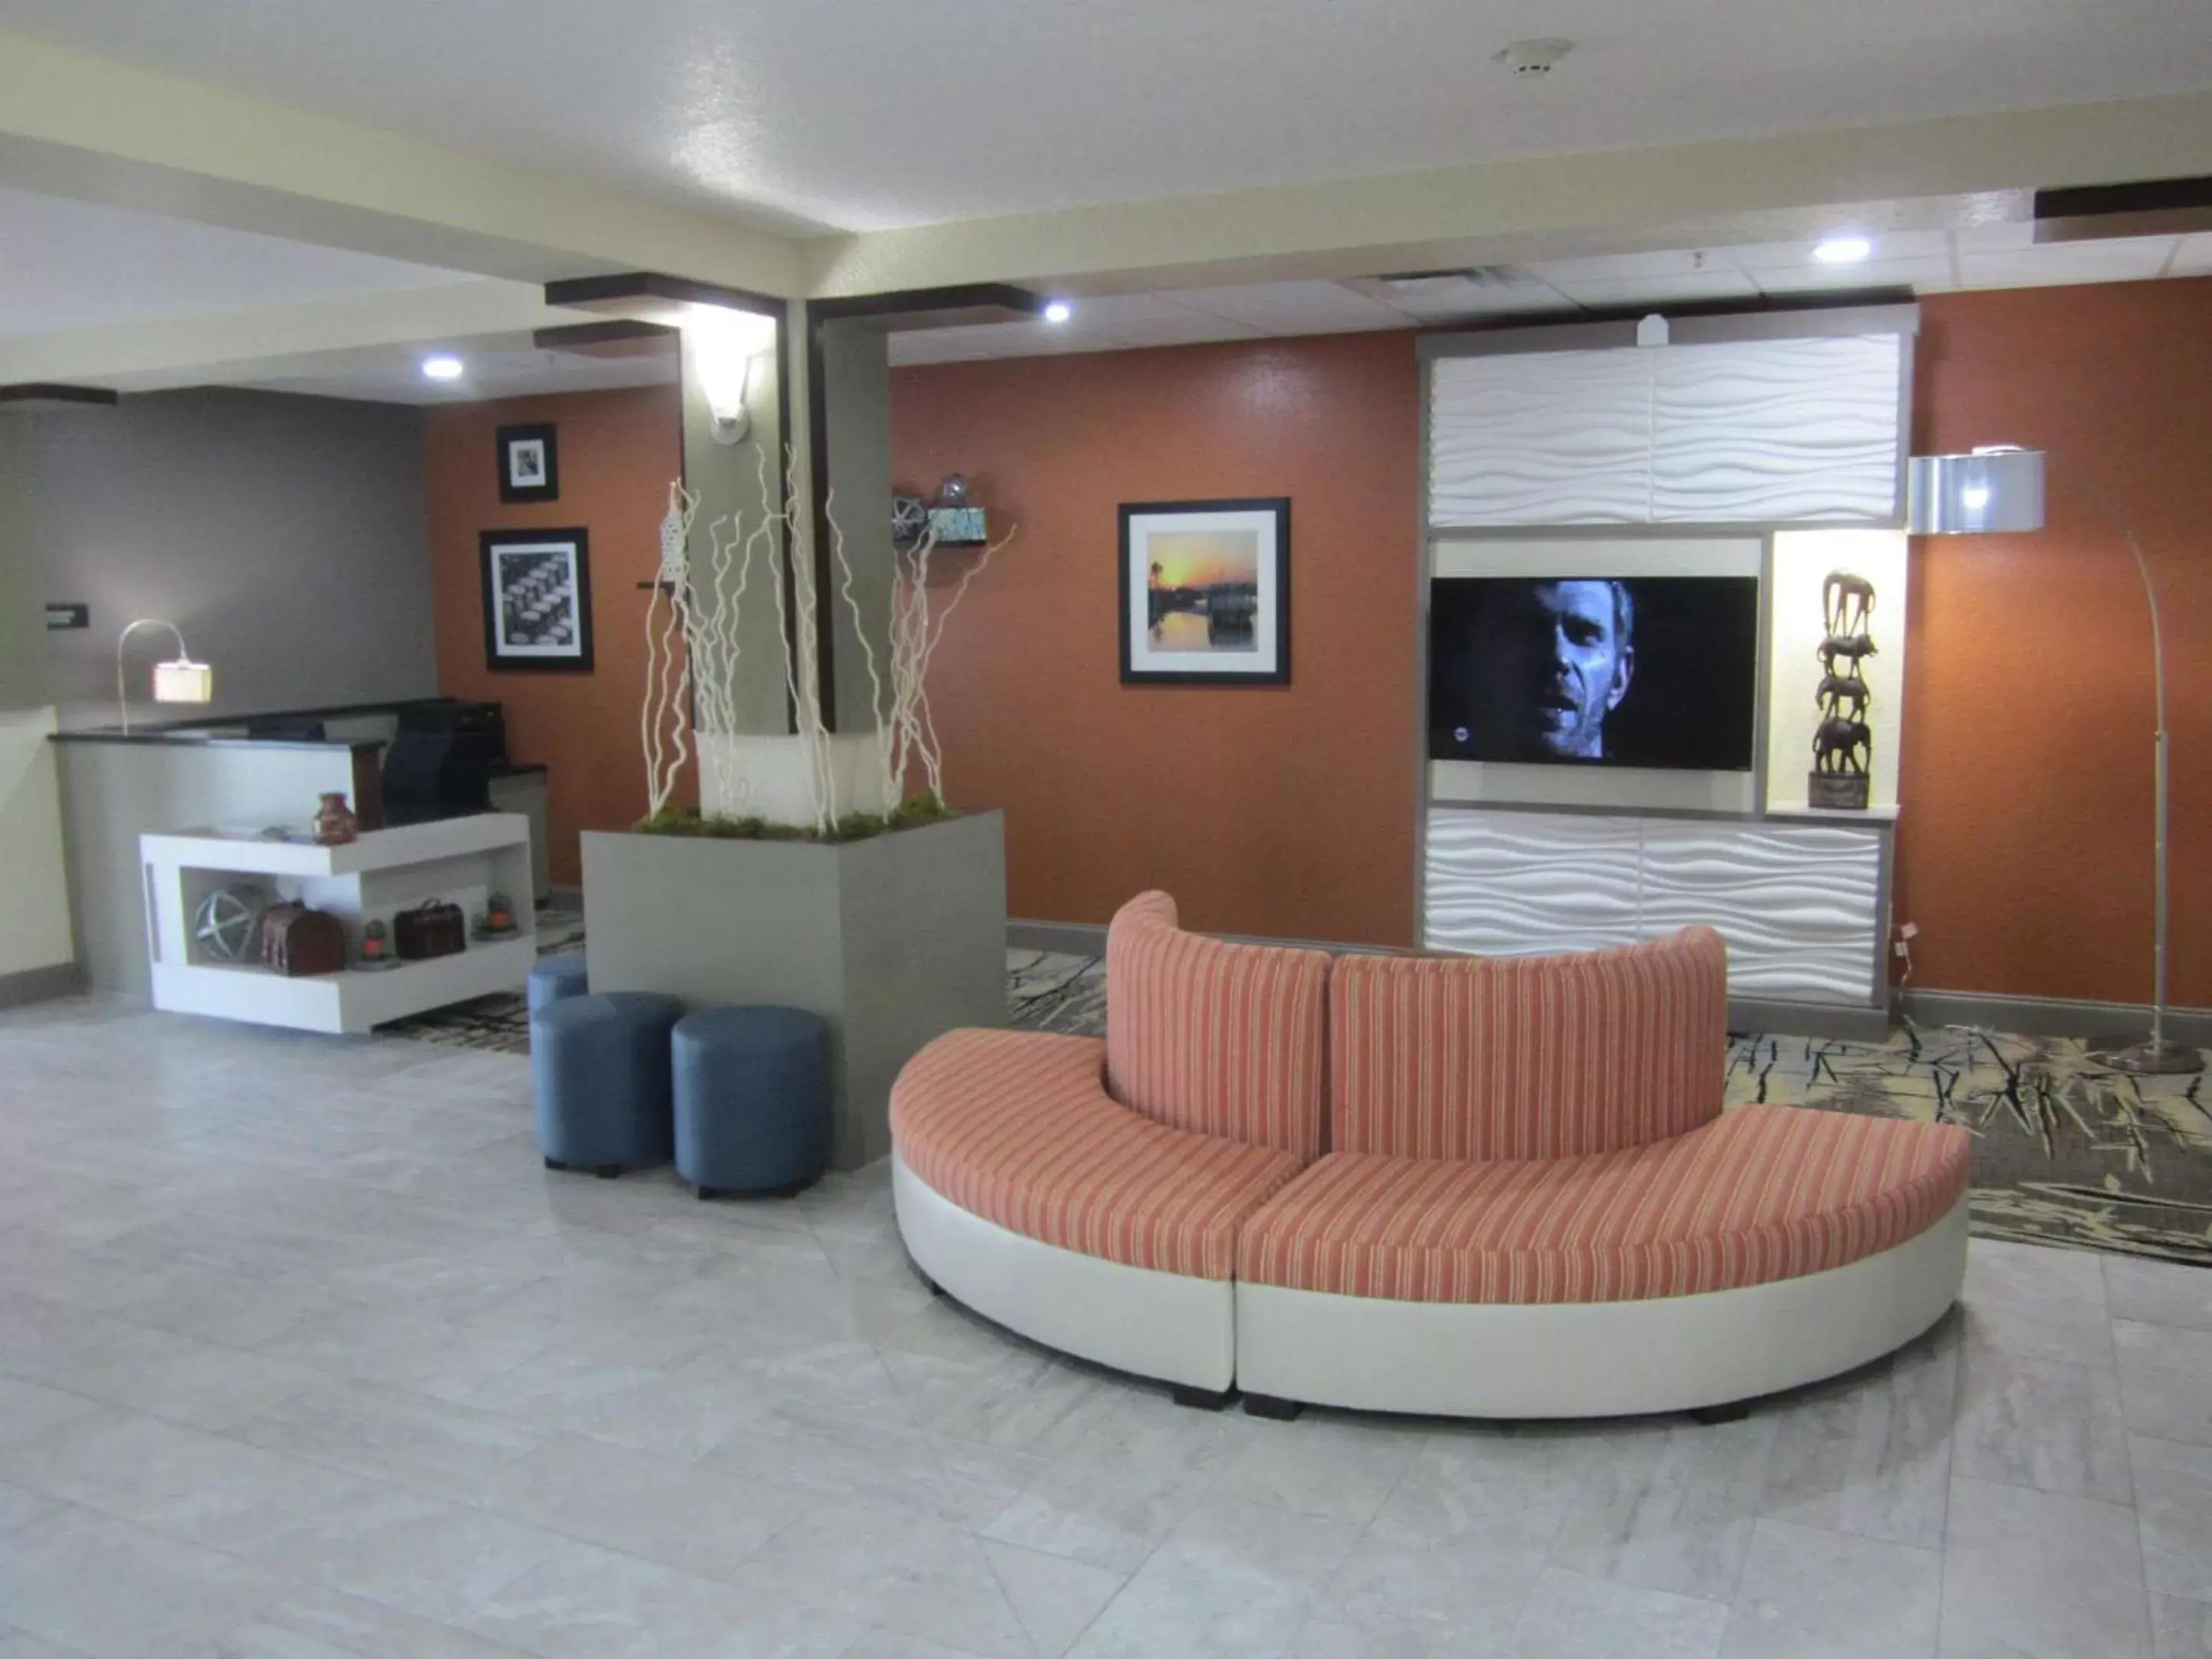 Lobby or reception, Lobby/Reception in Best Western Waldo Inn & Suites